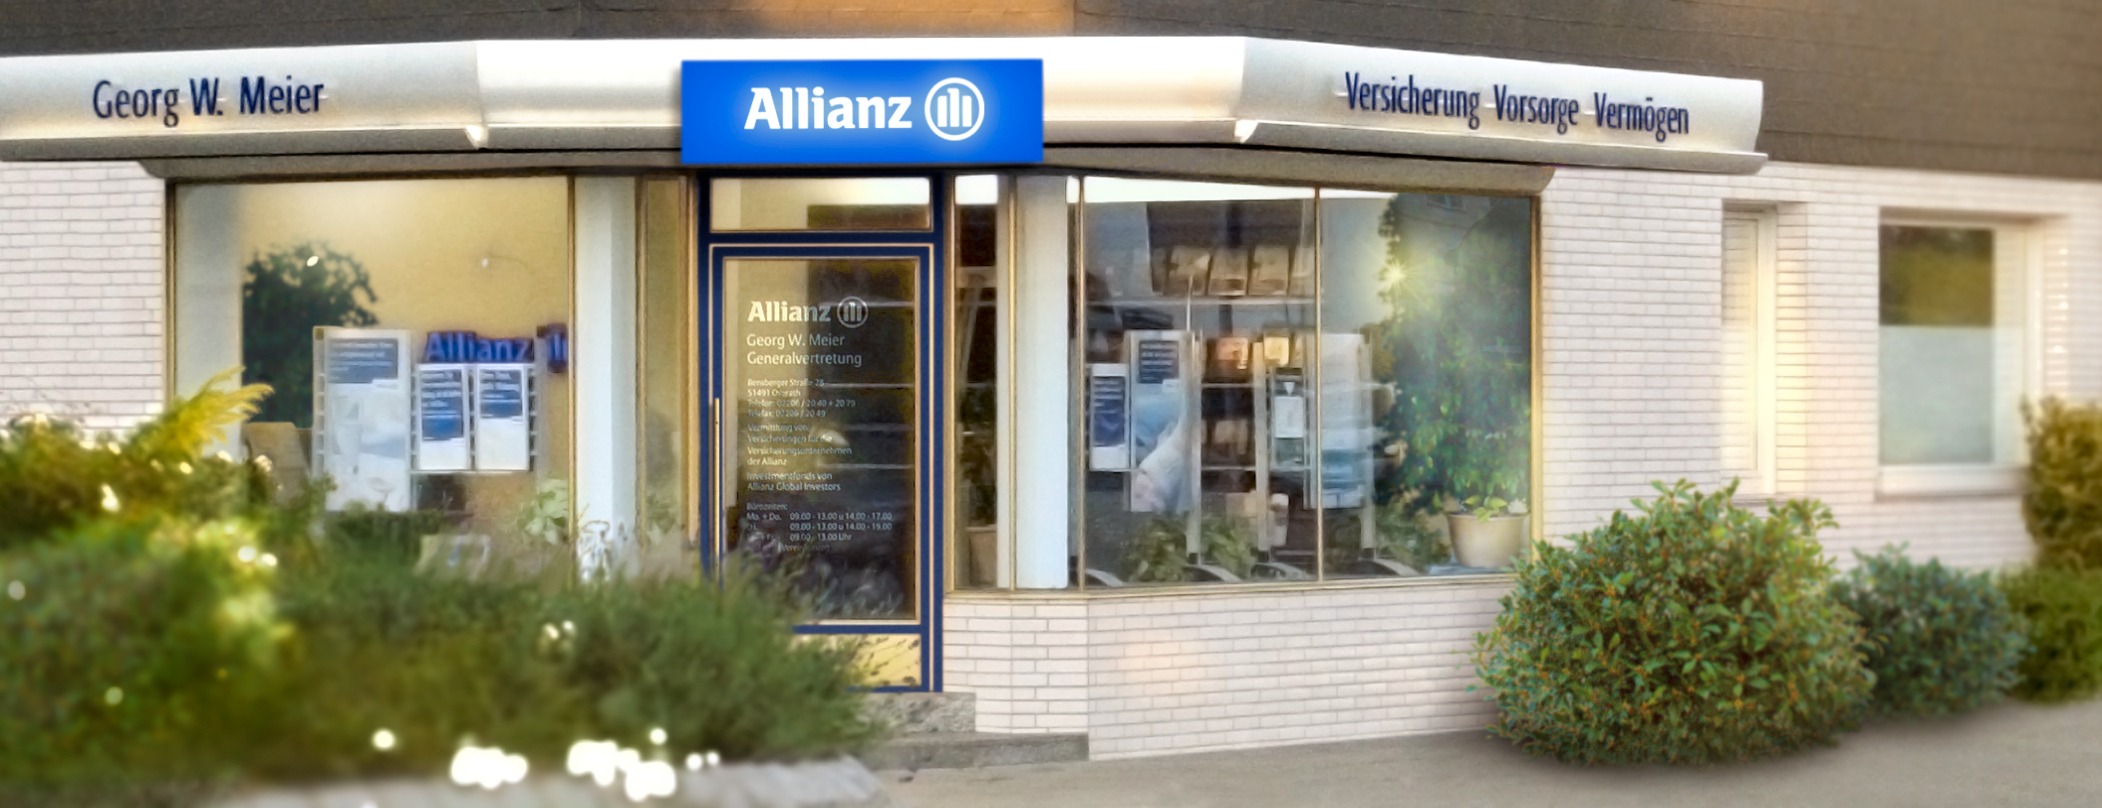 Allianz Versicherung Georg W. Meier Overath - Allianz Online Beratung Versicherung Coronakrise